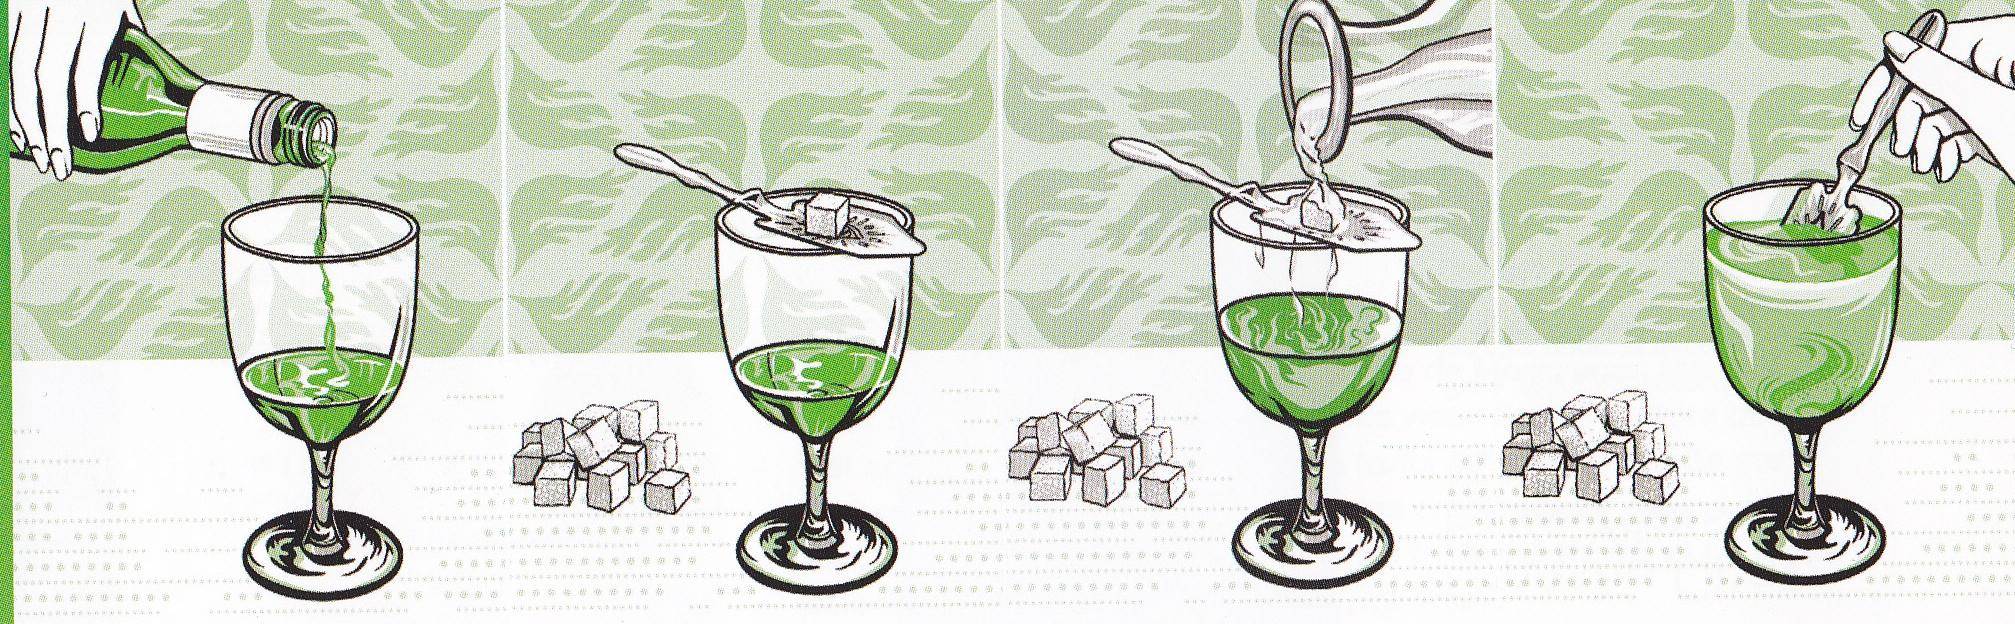 Инструкция, как пить, чем запивать и с чем мешать абсент в домашних условиях